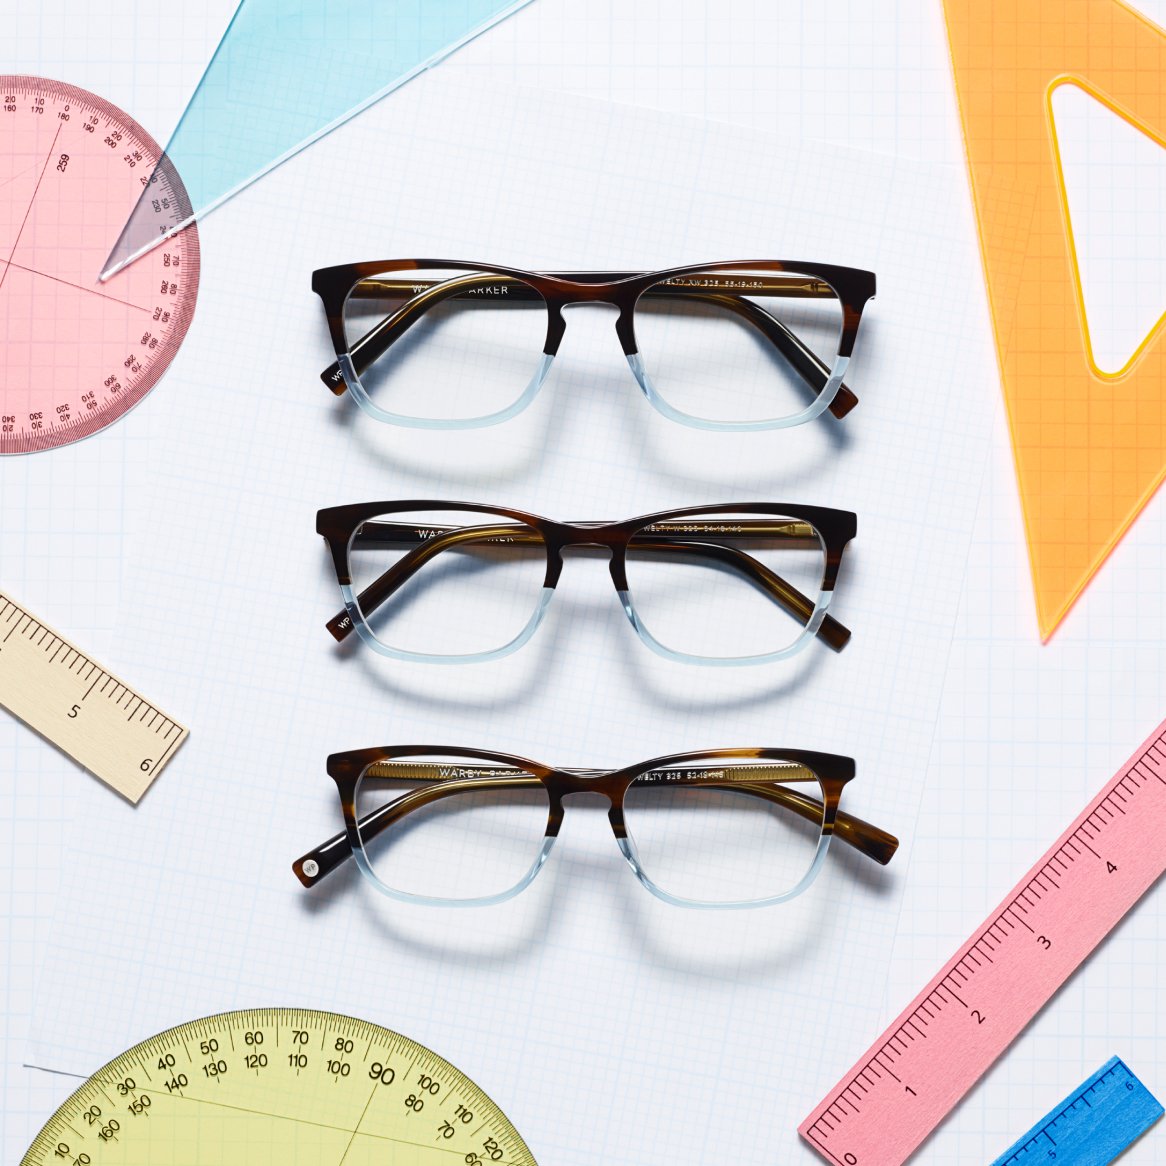 Glasses frames pictured alongside measuring tools